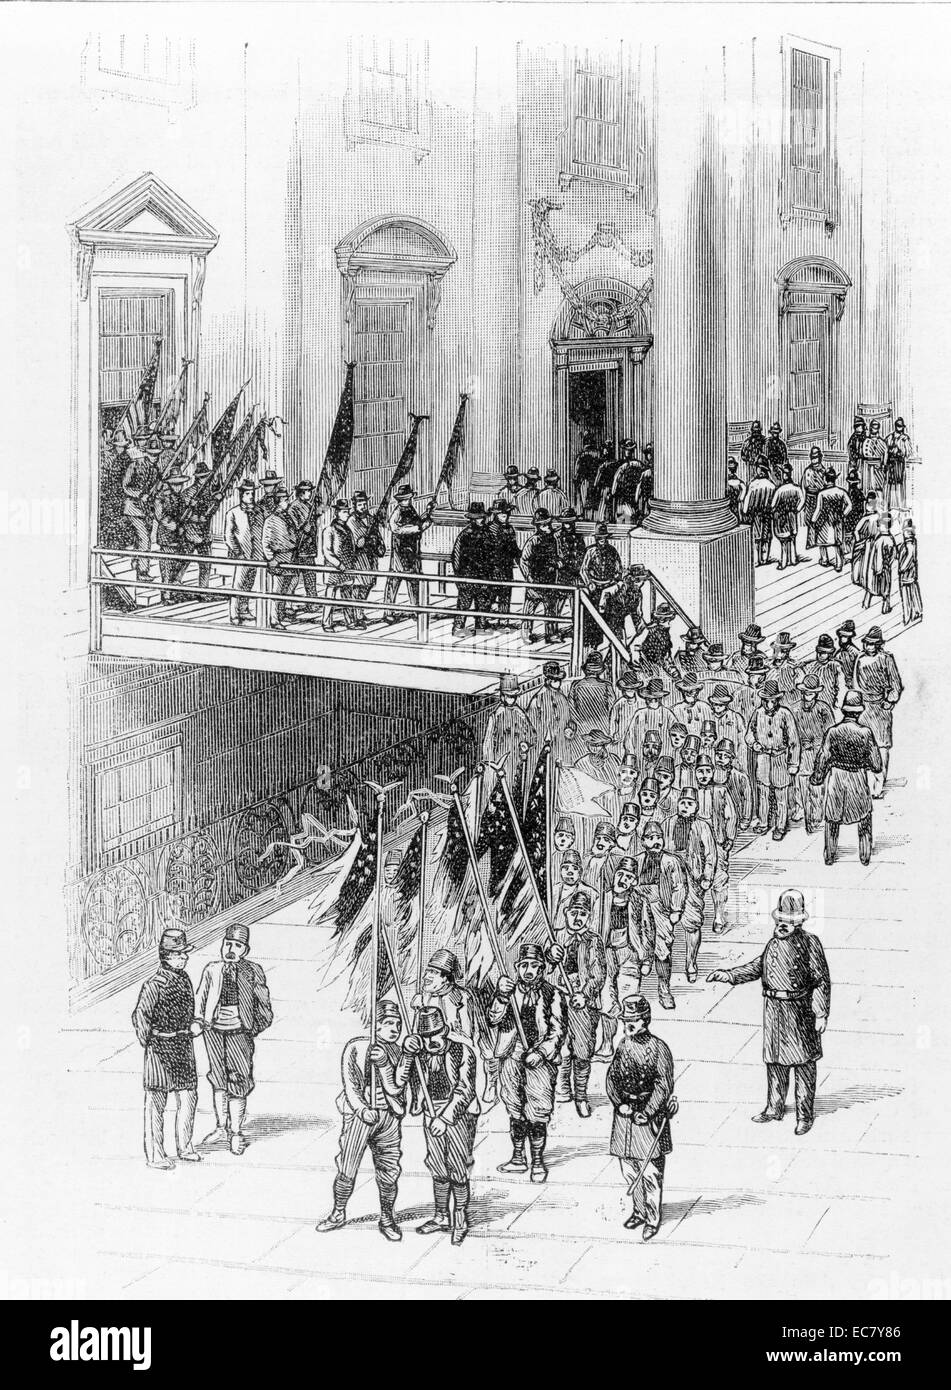 La nouvelle administration - les visiteurs de payer leurs respects à Président Harrison (1773 - 1841) à la Maison Blanche Maison Blanche entrer dans la foule par une porte et sortir à une fenêtre de la salle de l'Est sur un pont temporaire. Banque D'Images